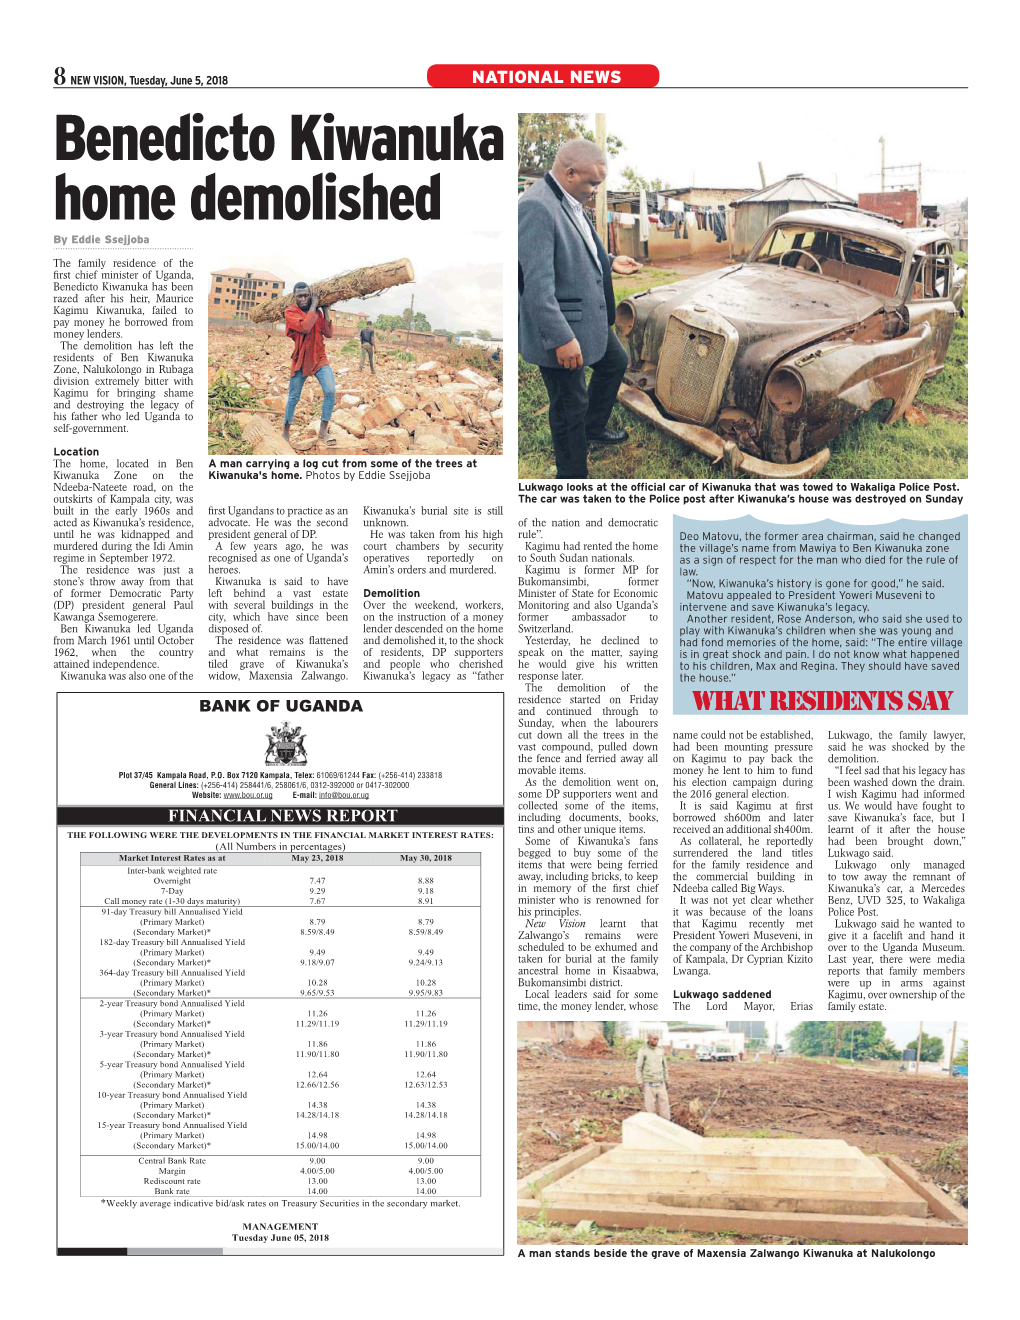 Benedicto Kiwanuka Home Demolished